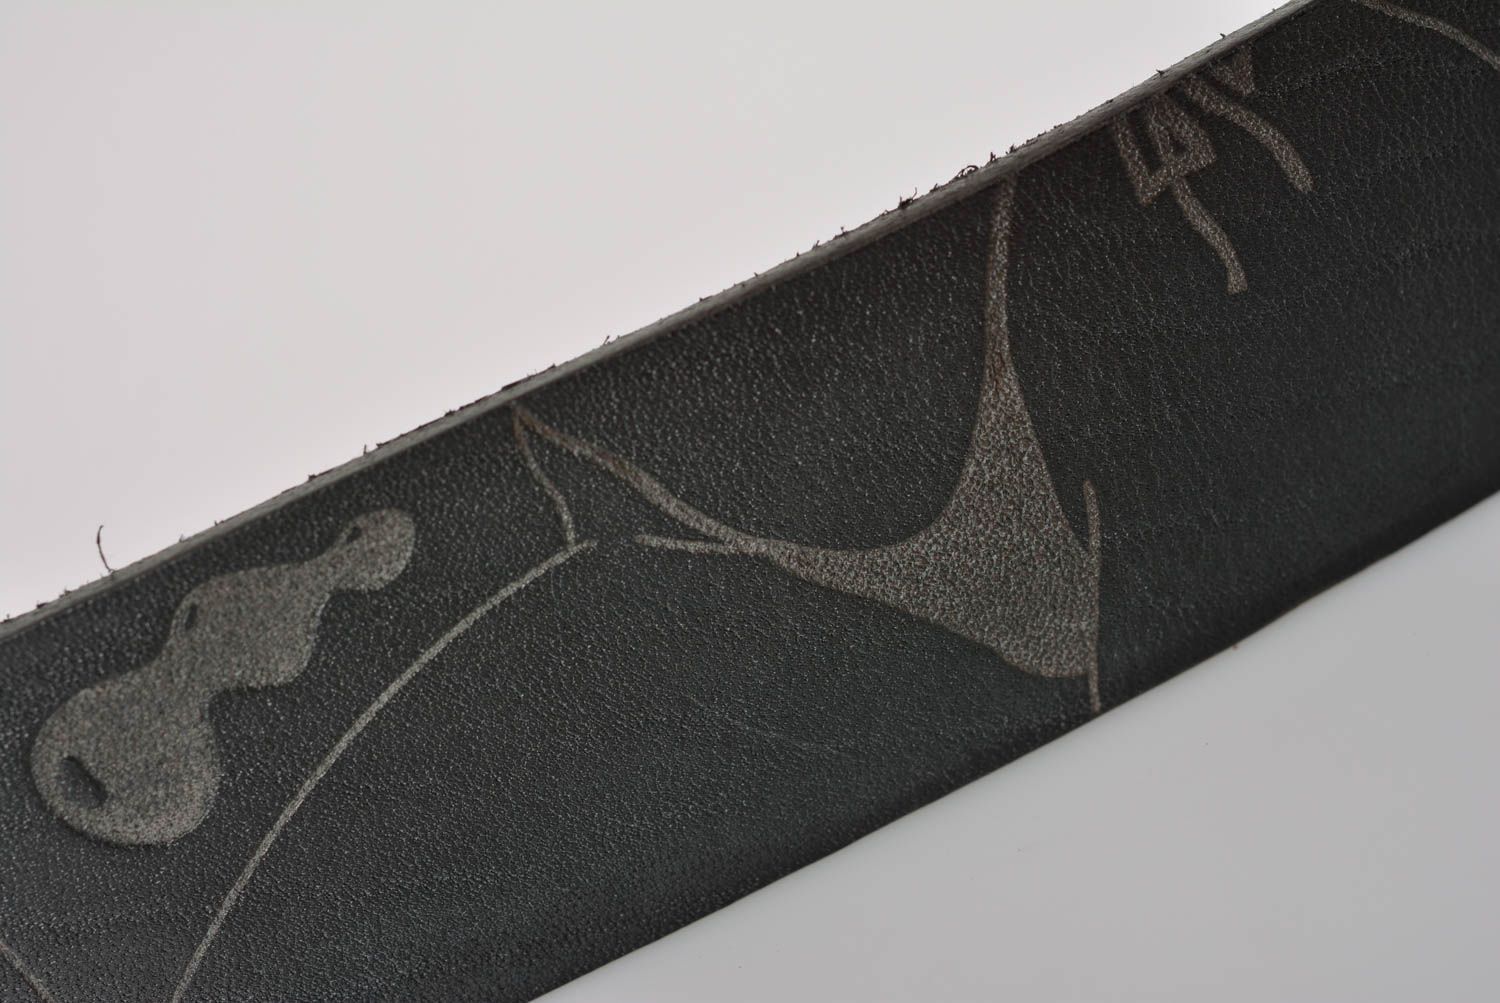 Handmade belt for men handmade leather goods designer belts accessories for men photo 4